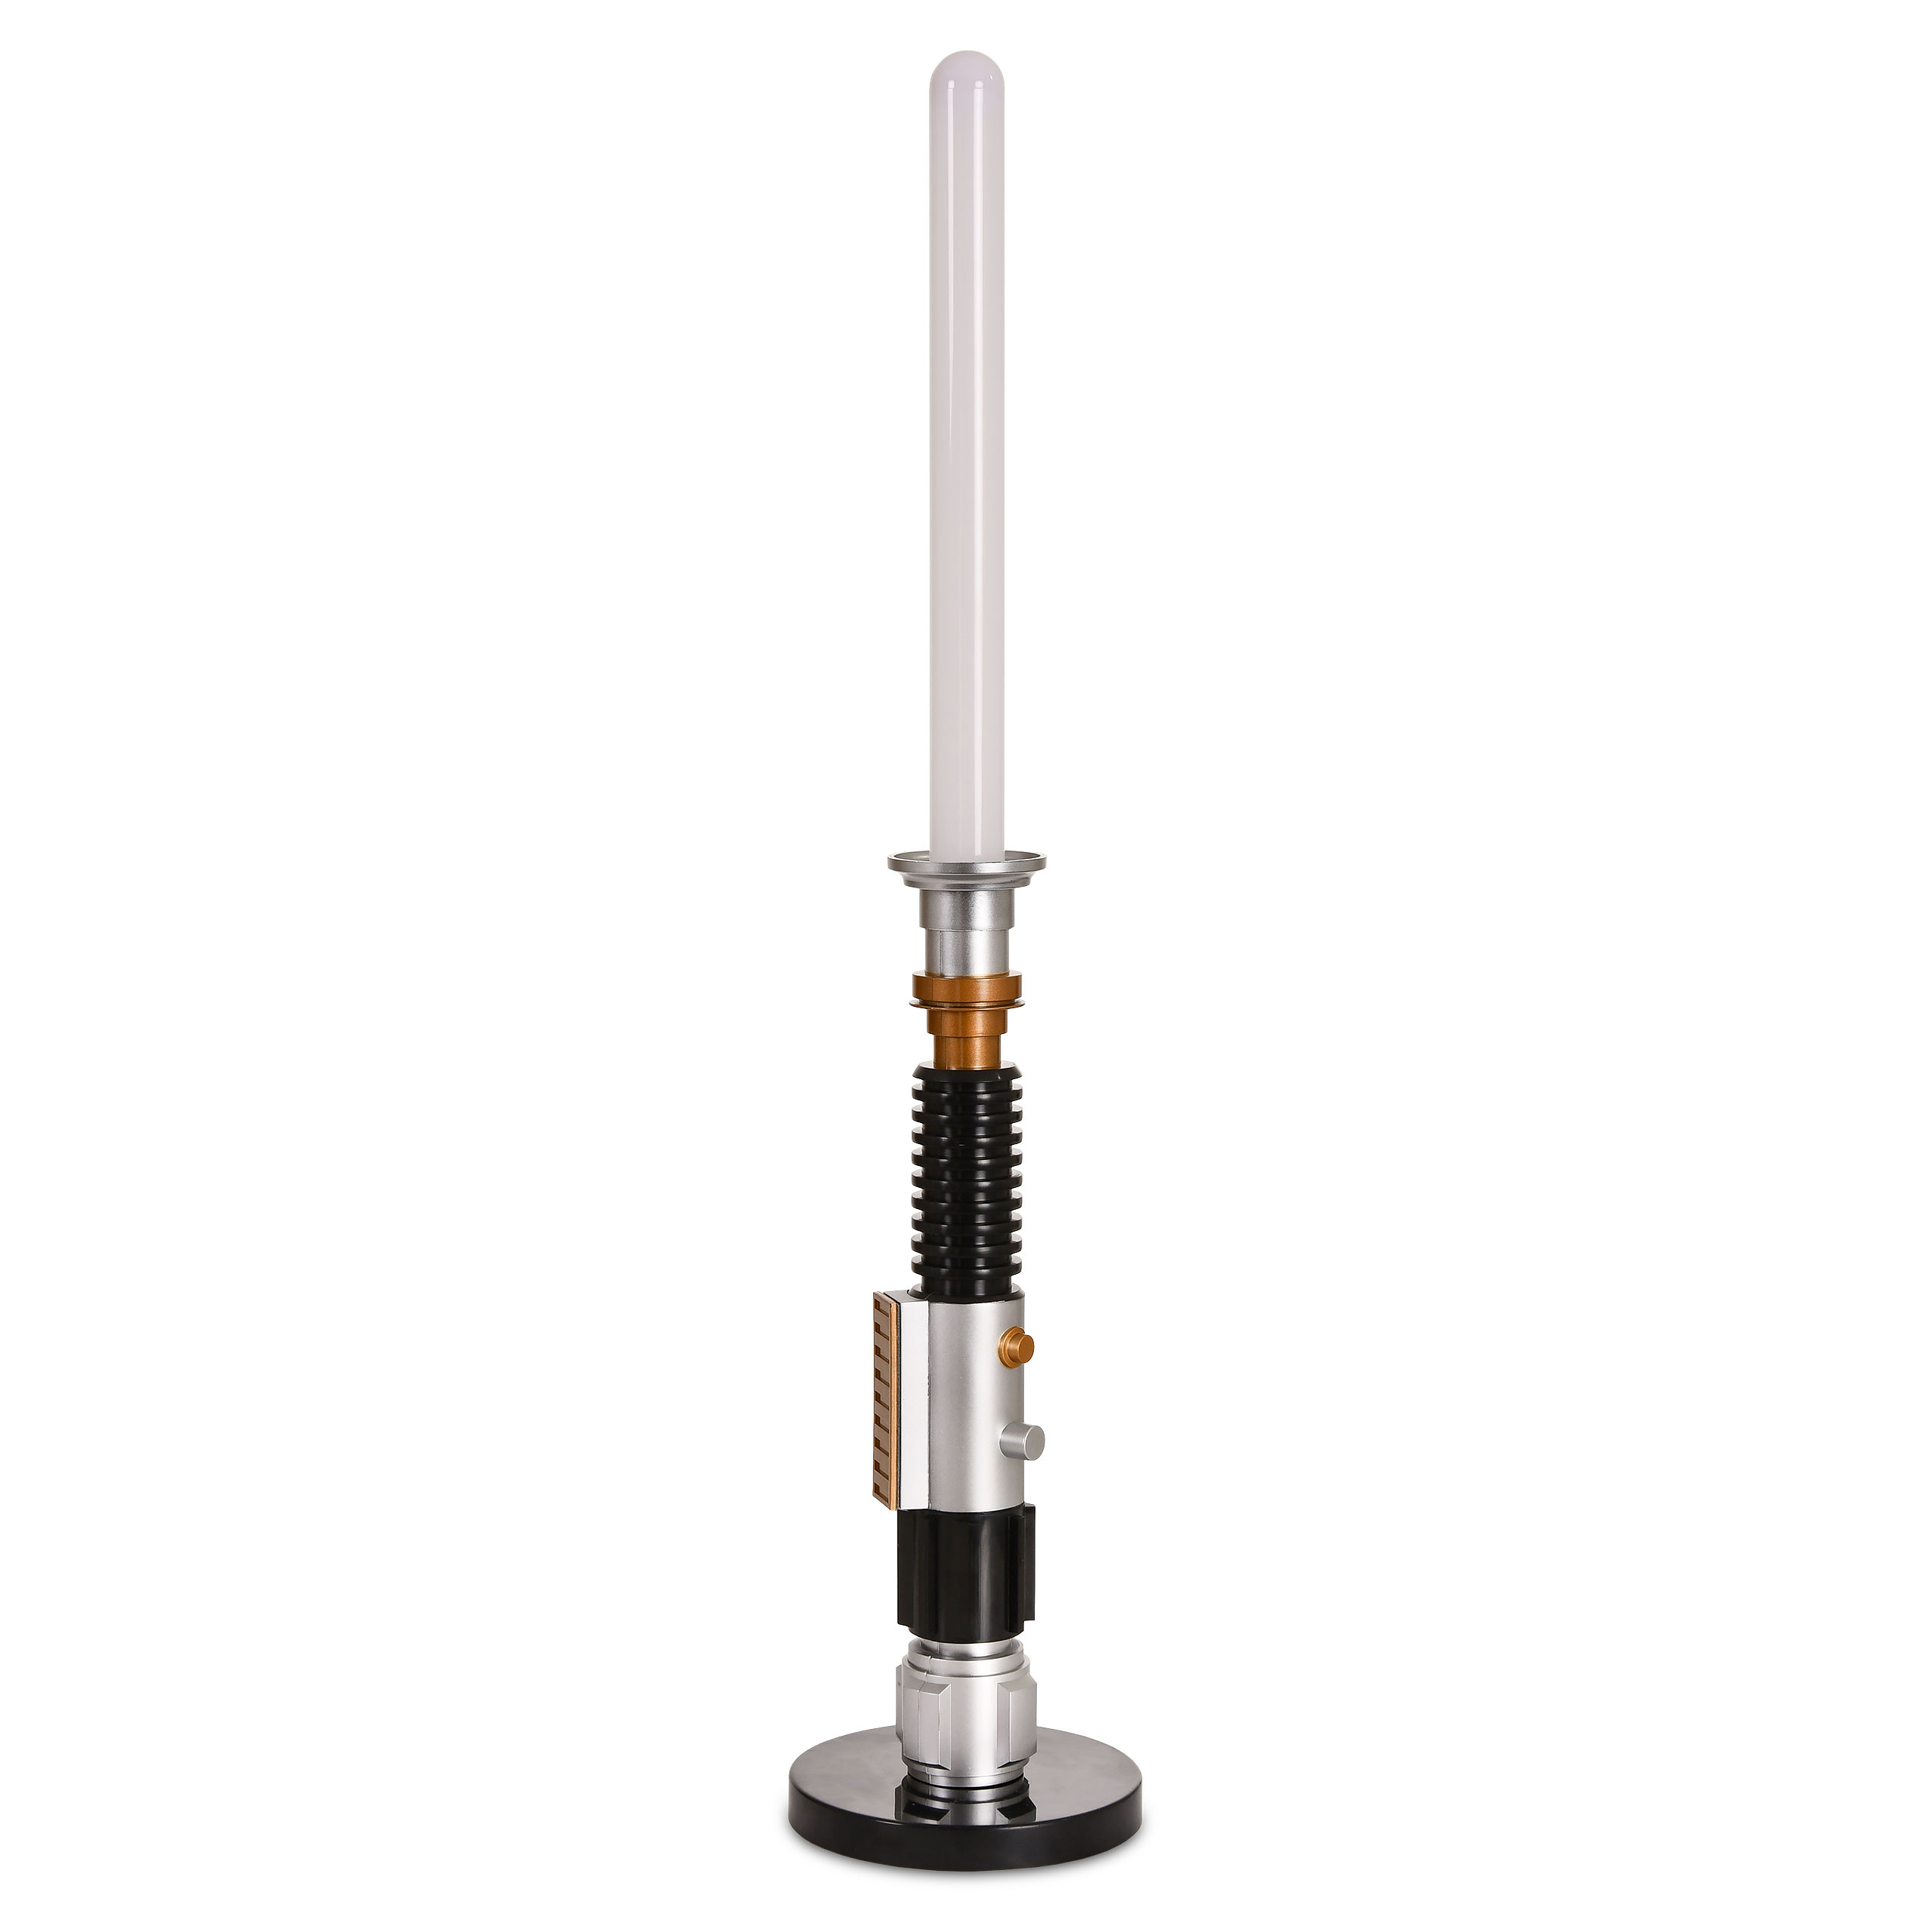 Star Wars - Obi-Wan Kenobi Lightsaber Table Lamp